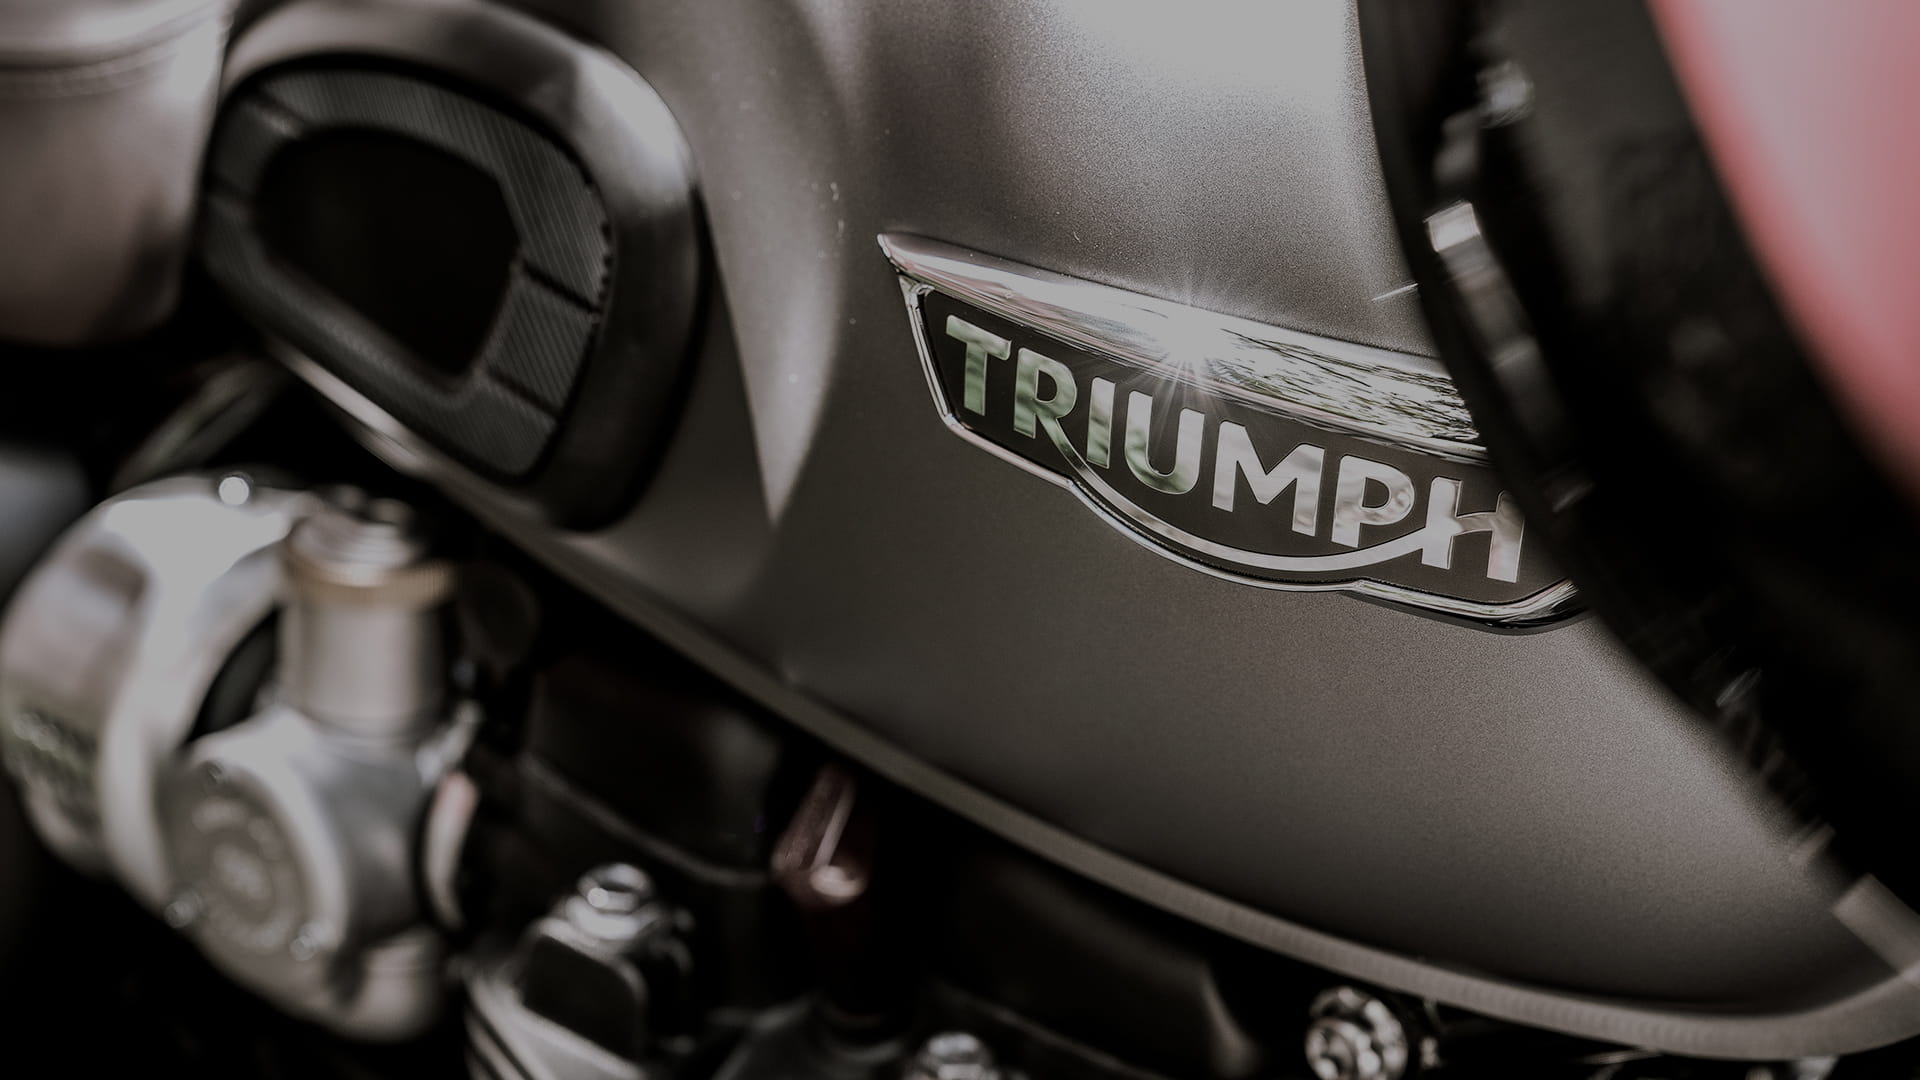 FInanzierungs- und Leasingangebote der Triumph Motorcycle Finance